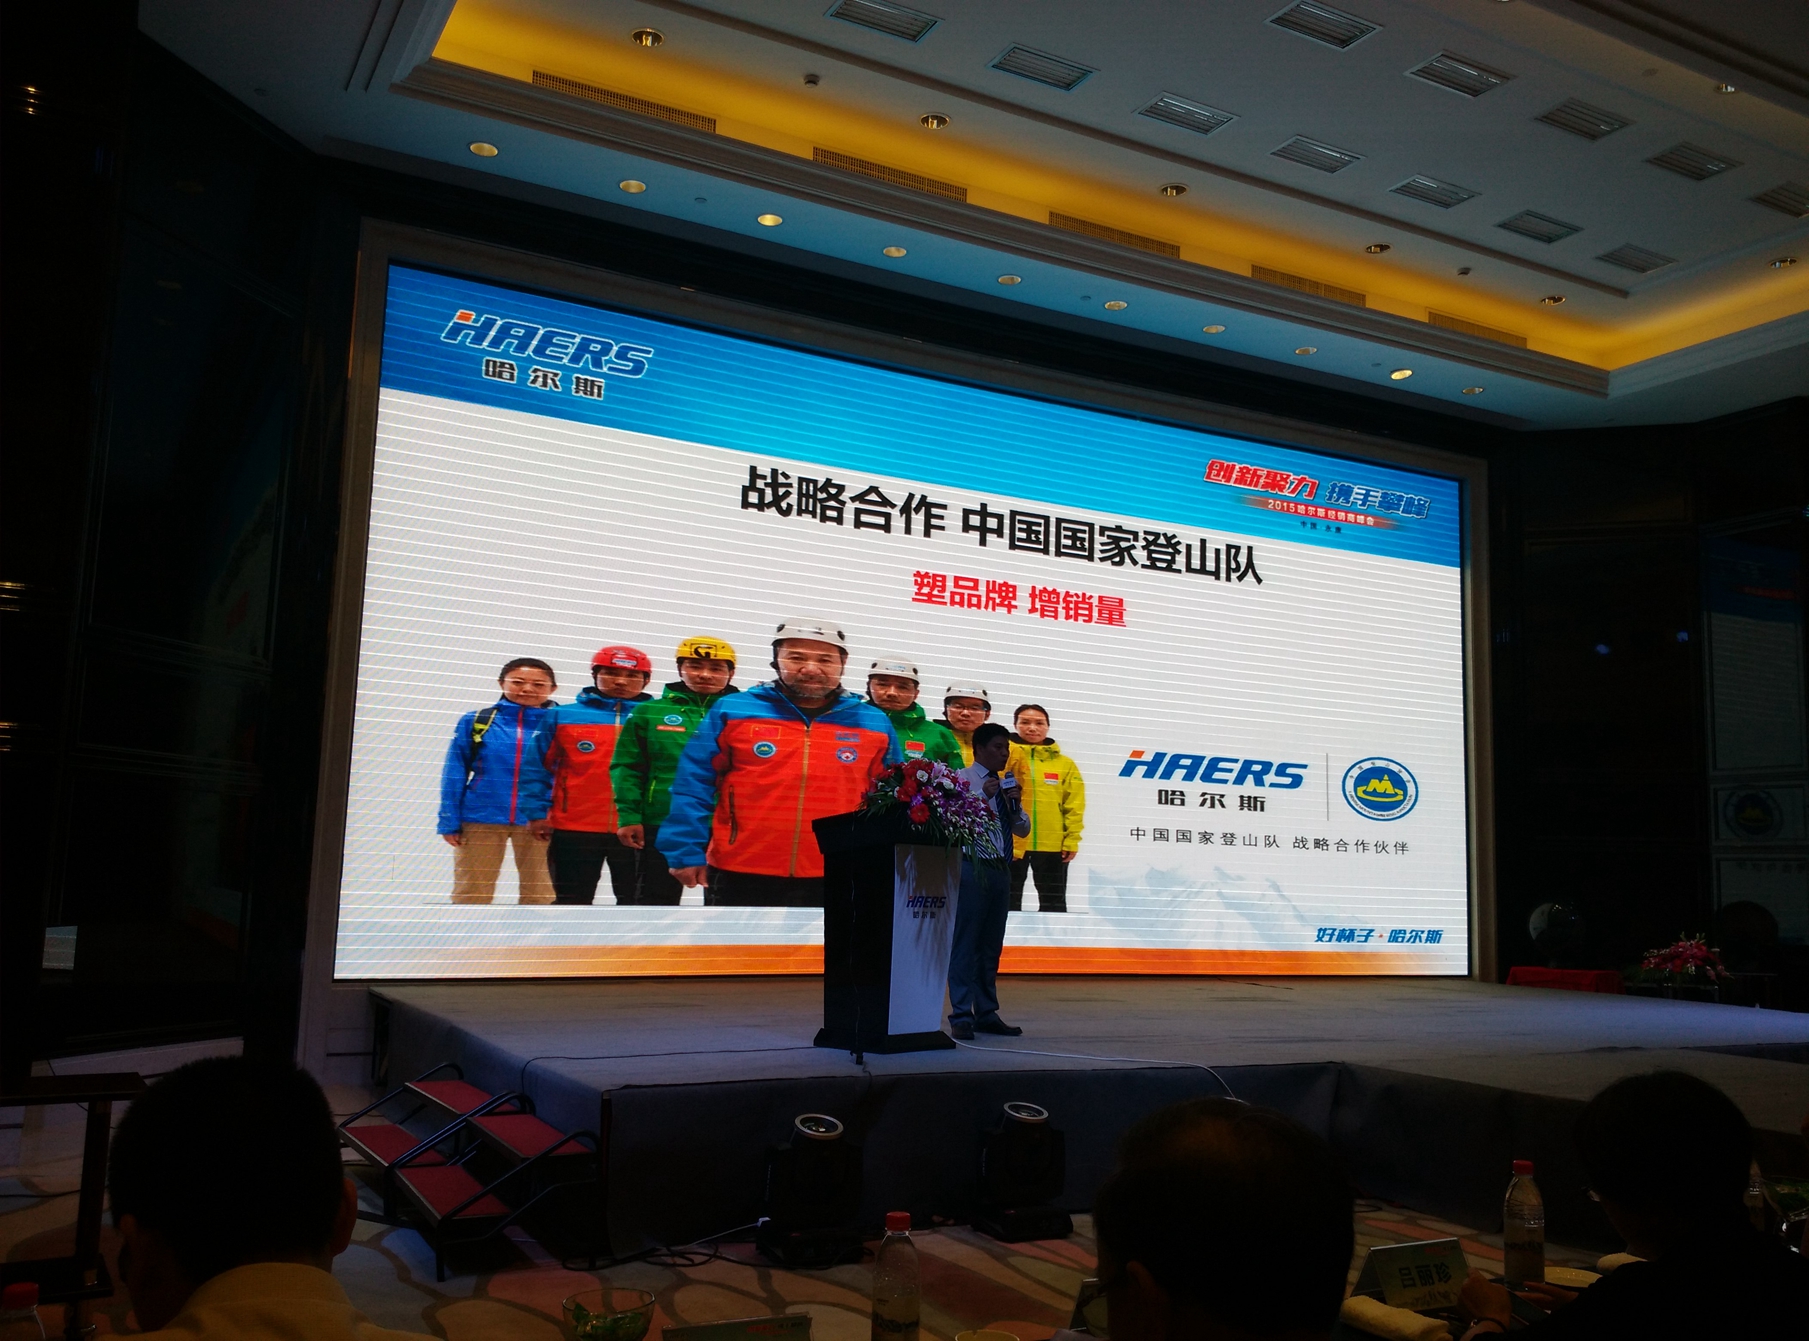 中国国家登山队与哈尔斯达成战略合作关系。